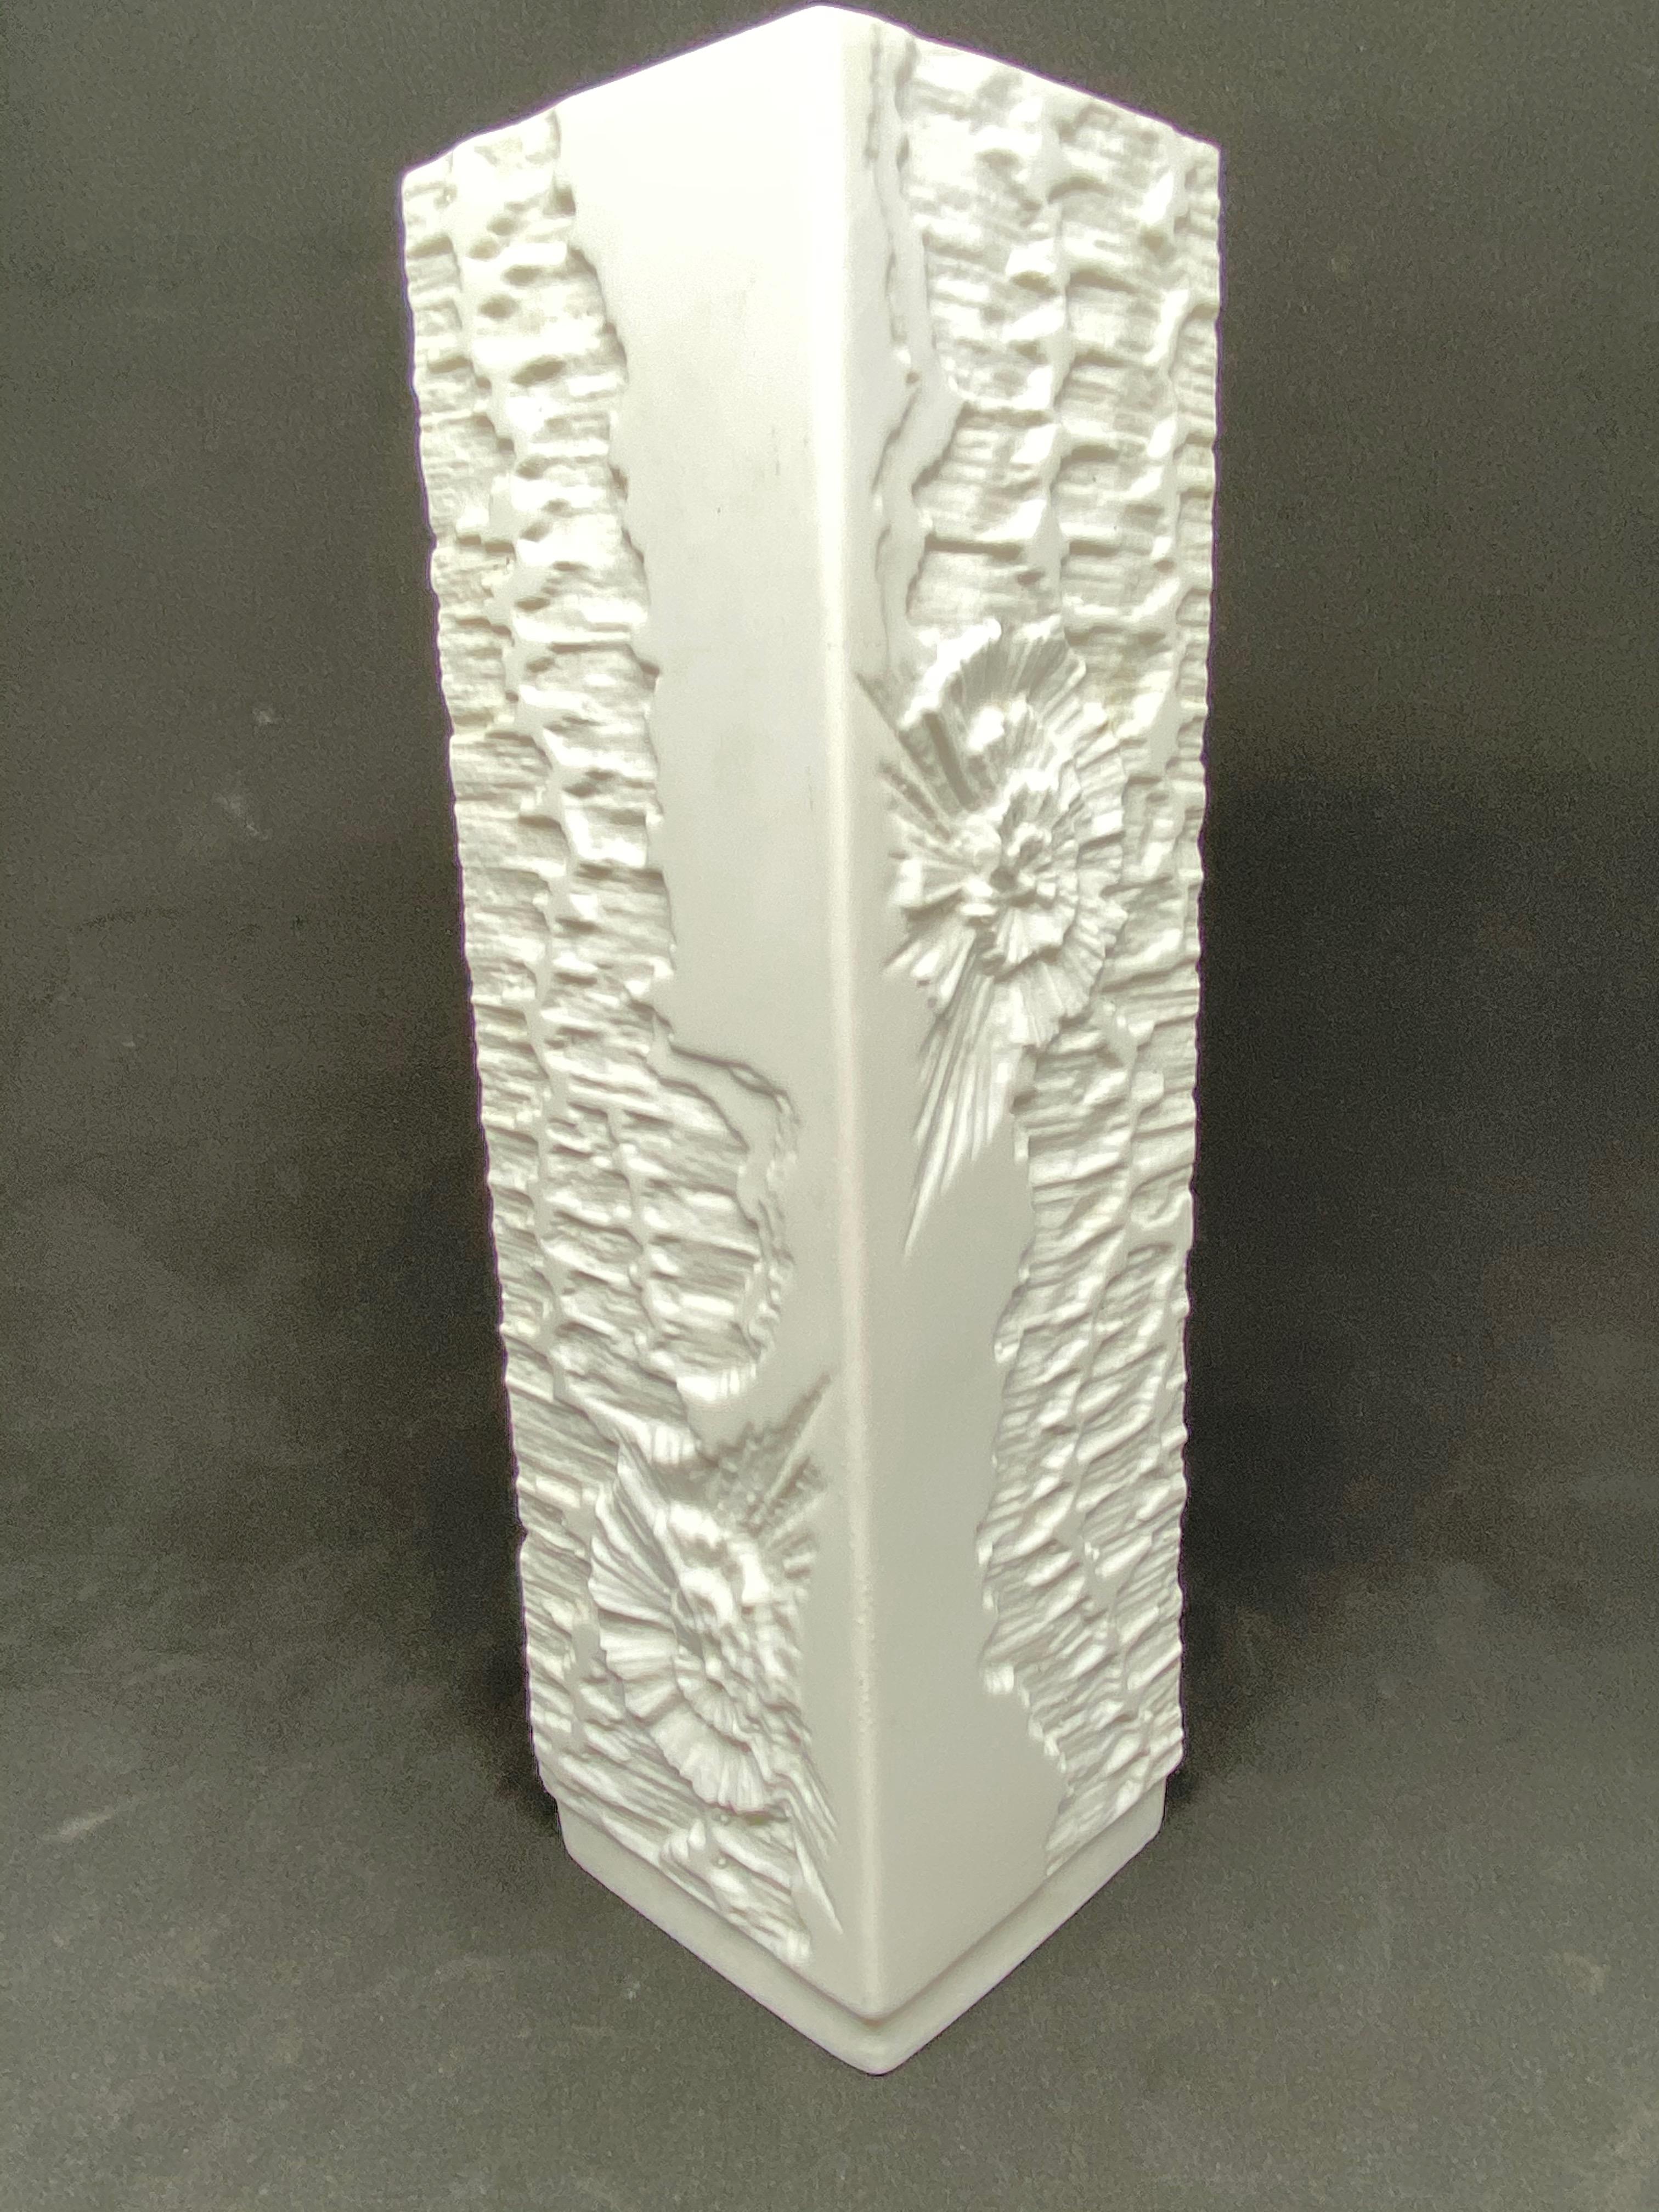 Un étonnant vase en porcelaine biscuit de studio du milieu du siècle, fabriqué en Allemagne par Kaiser Porcelain, vers les années 1970. Le vase est en très bon état, sans éclats, fissures ou piqûres de puces. Signé avec la marque du fabricant et le